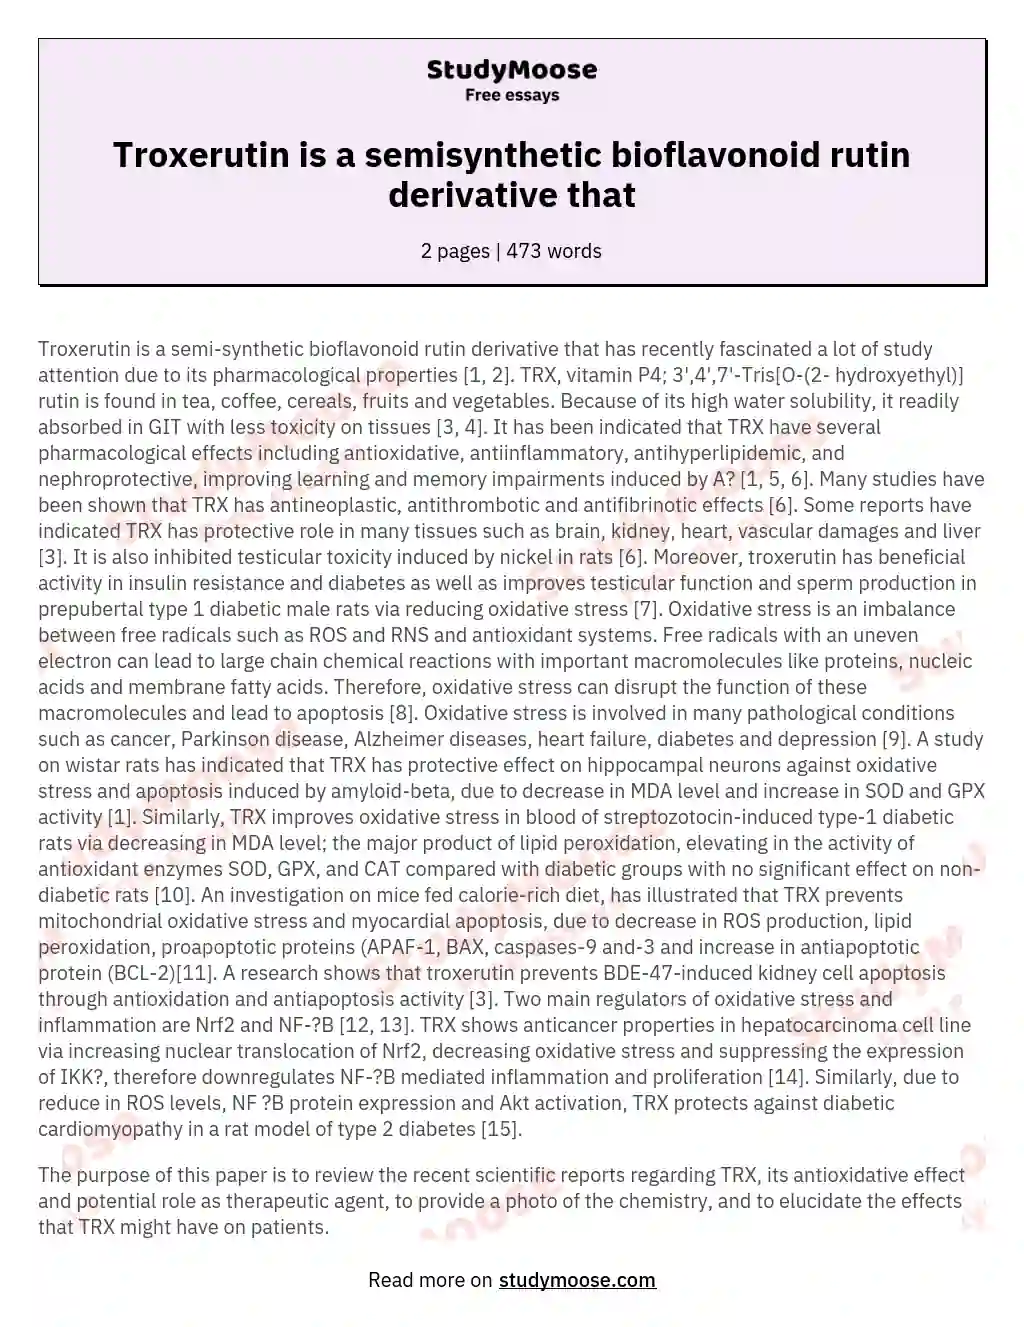 Troxerutin is a semisynthetic bioflavonoid rutin derivative that essay